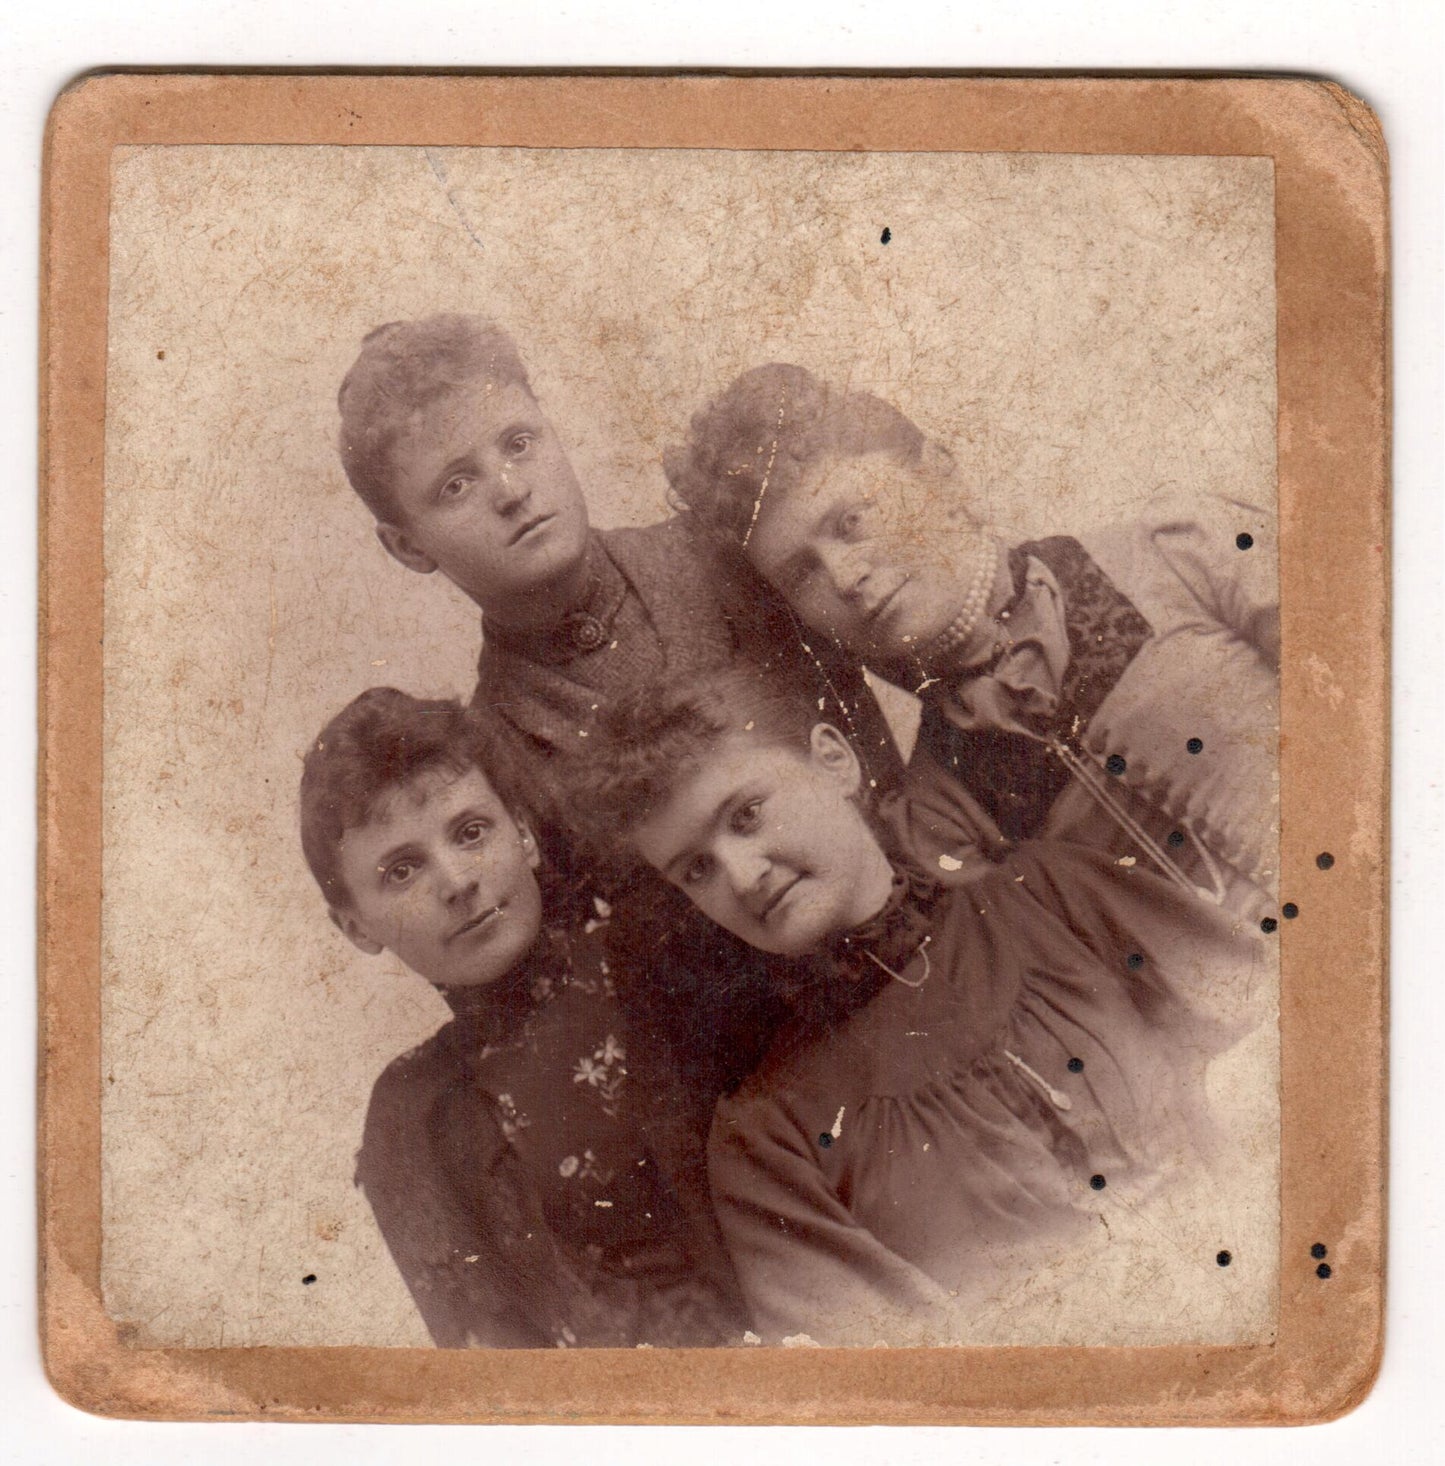 Original Antique Photo Cabinet Card Family Portrait La Cygne Kansas Photo Gifts - Dahlströms Fine Art